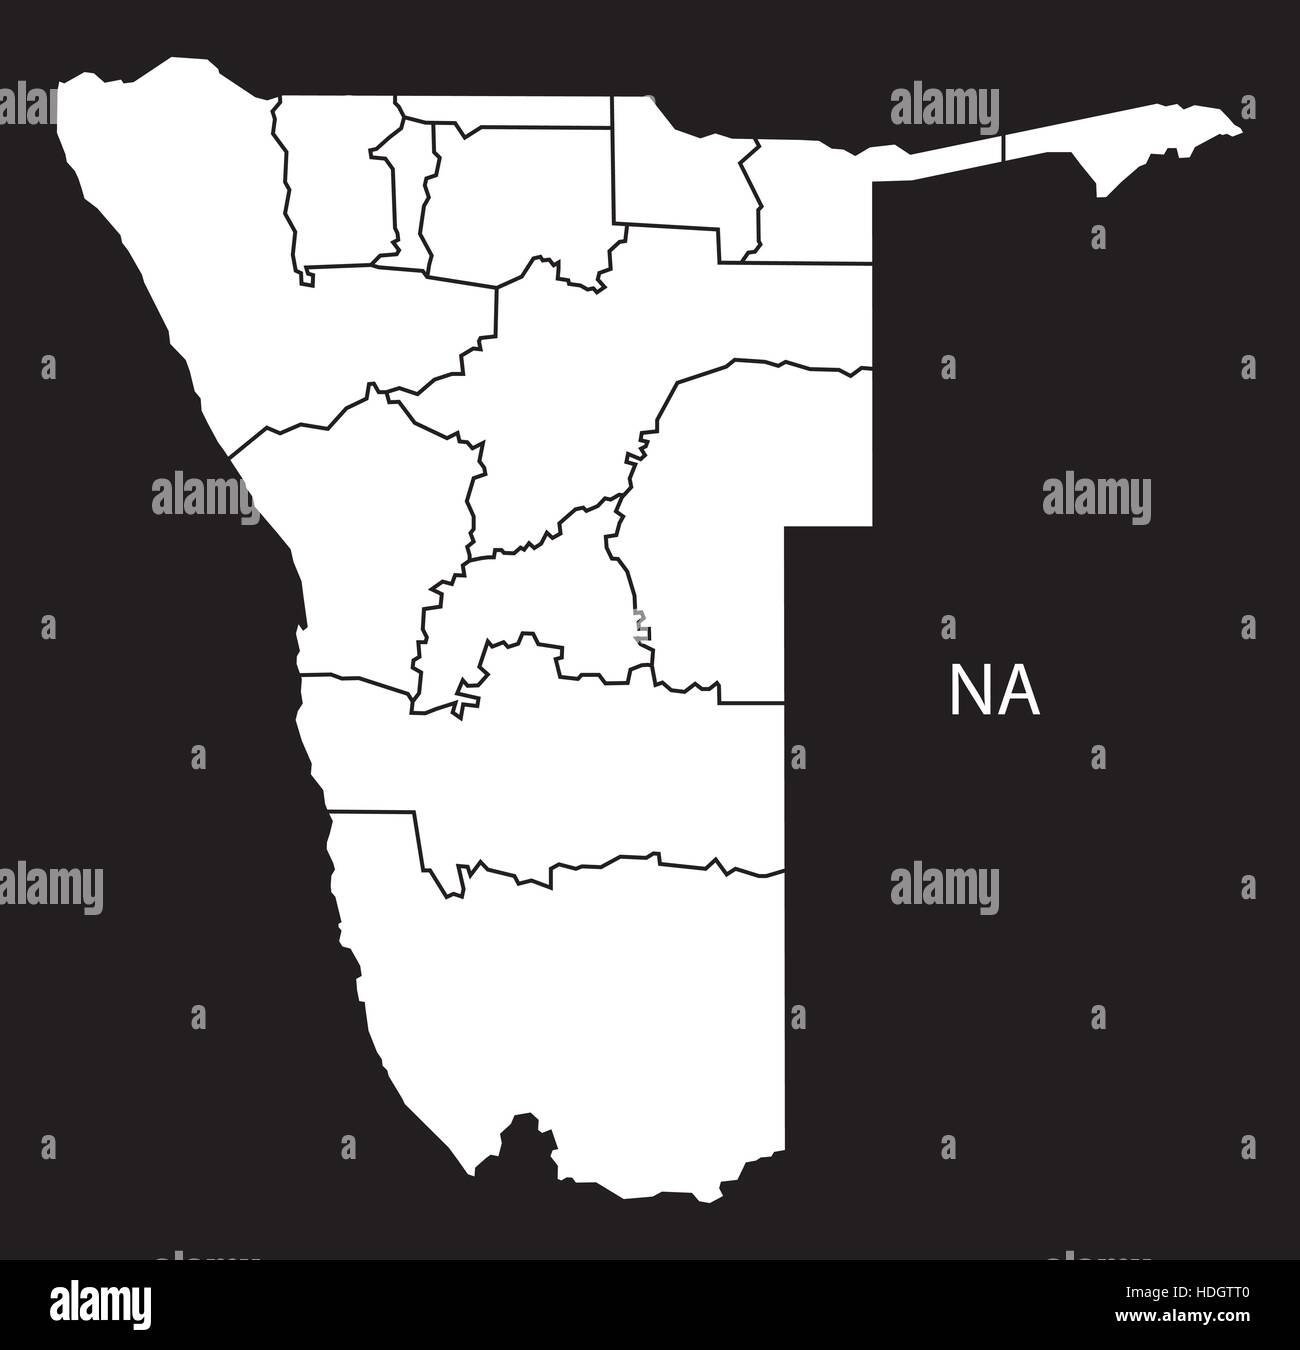 Namibia Regionen Karte schwarz / weiß Darstellung Stock Vektor